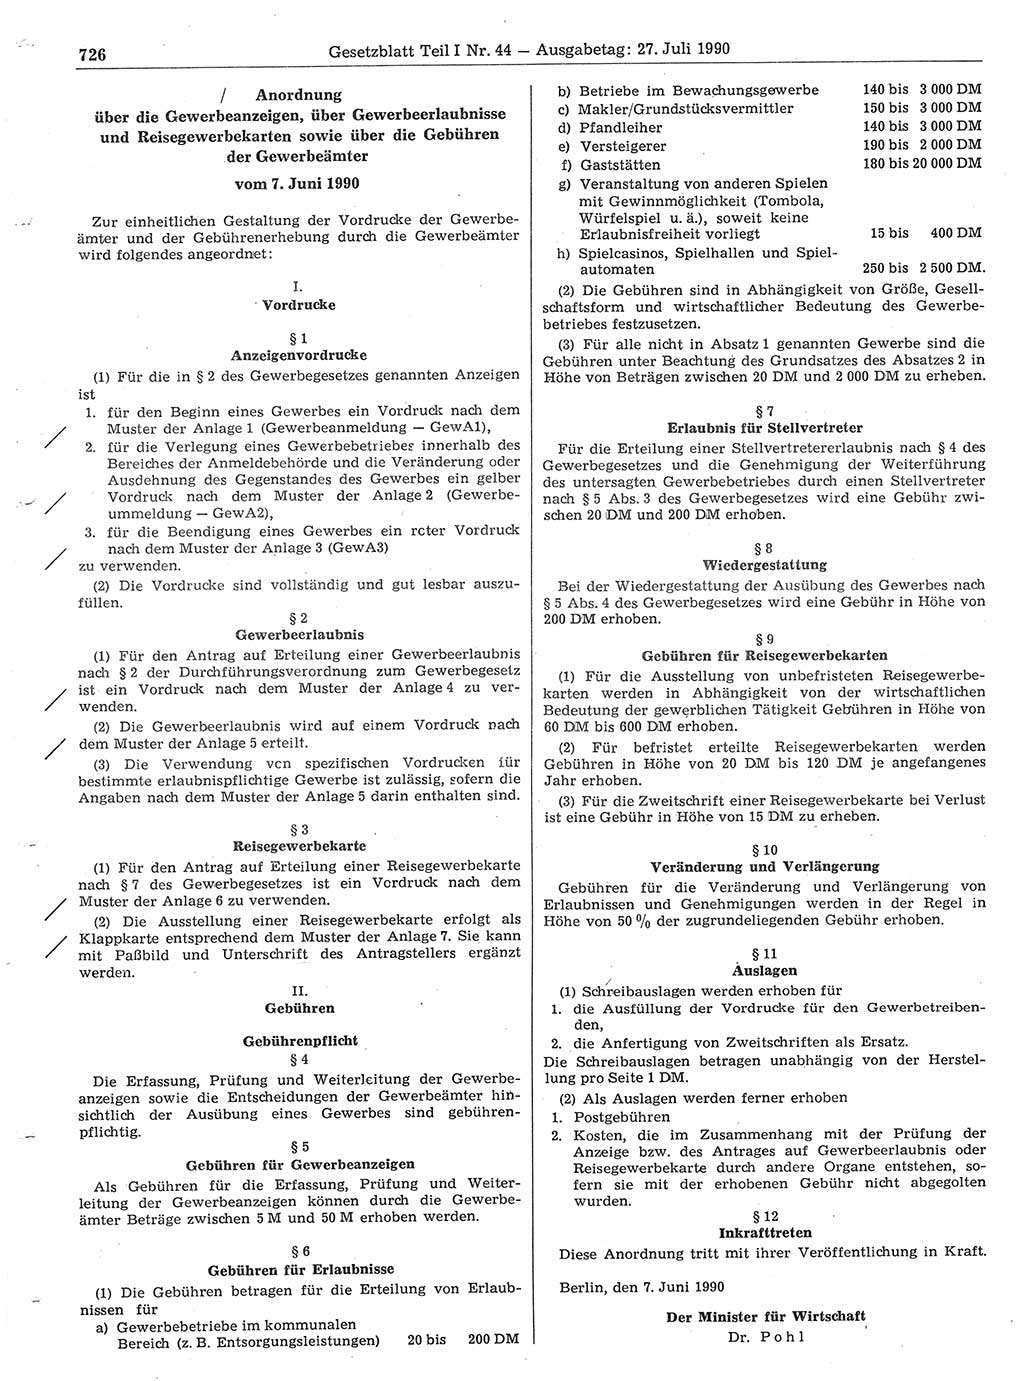 Gesetzblatt (GBl.) der Deutschen Demokratischen Republik (DDR) Teil Ⅰ 1990, Seite 726 (GBl. DDR Ⅰ 1990, S. 726)